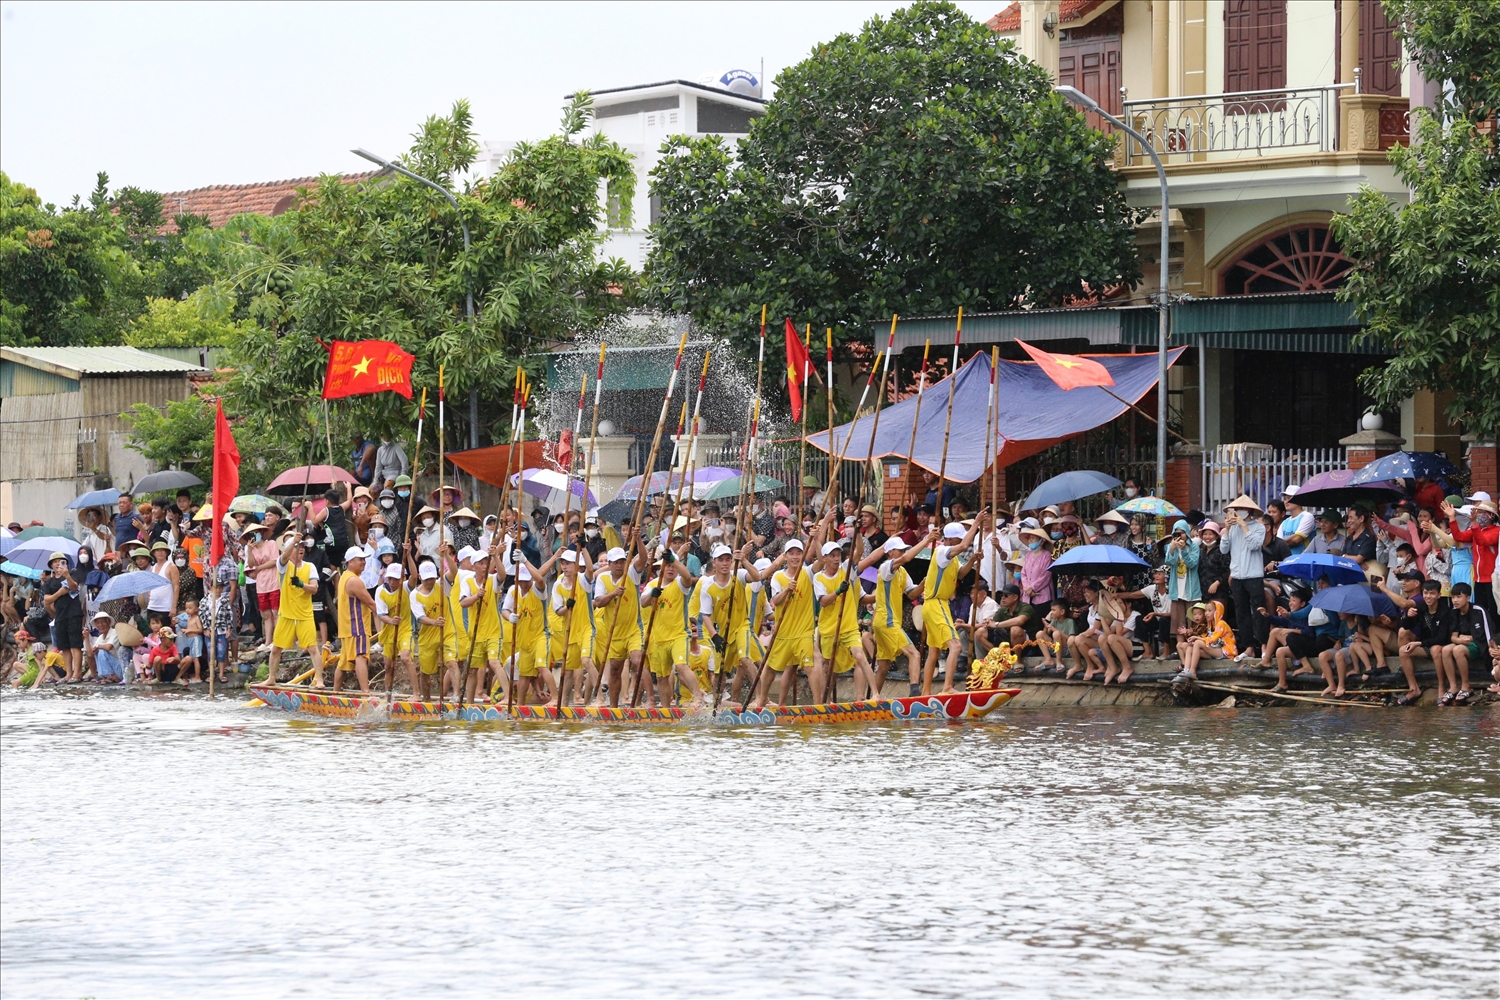 Hội đua thuyền chải truyền thống là hoạt động được mong chờ nhất của lễ hội xuống đồng hằng năm